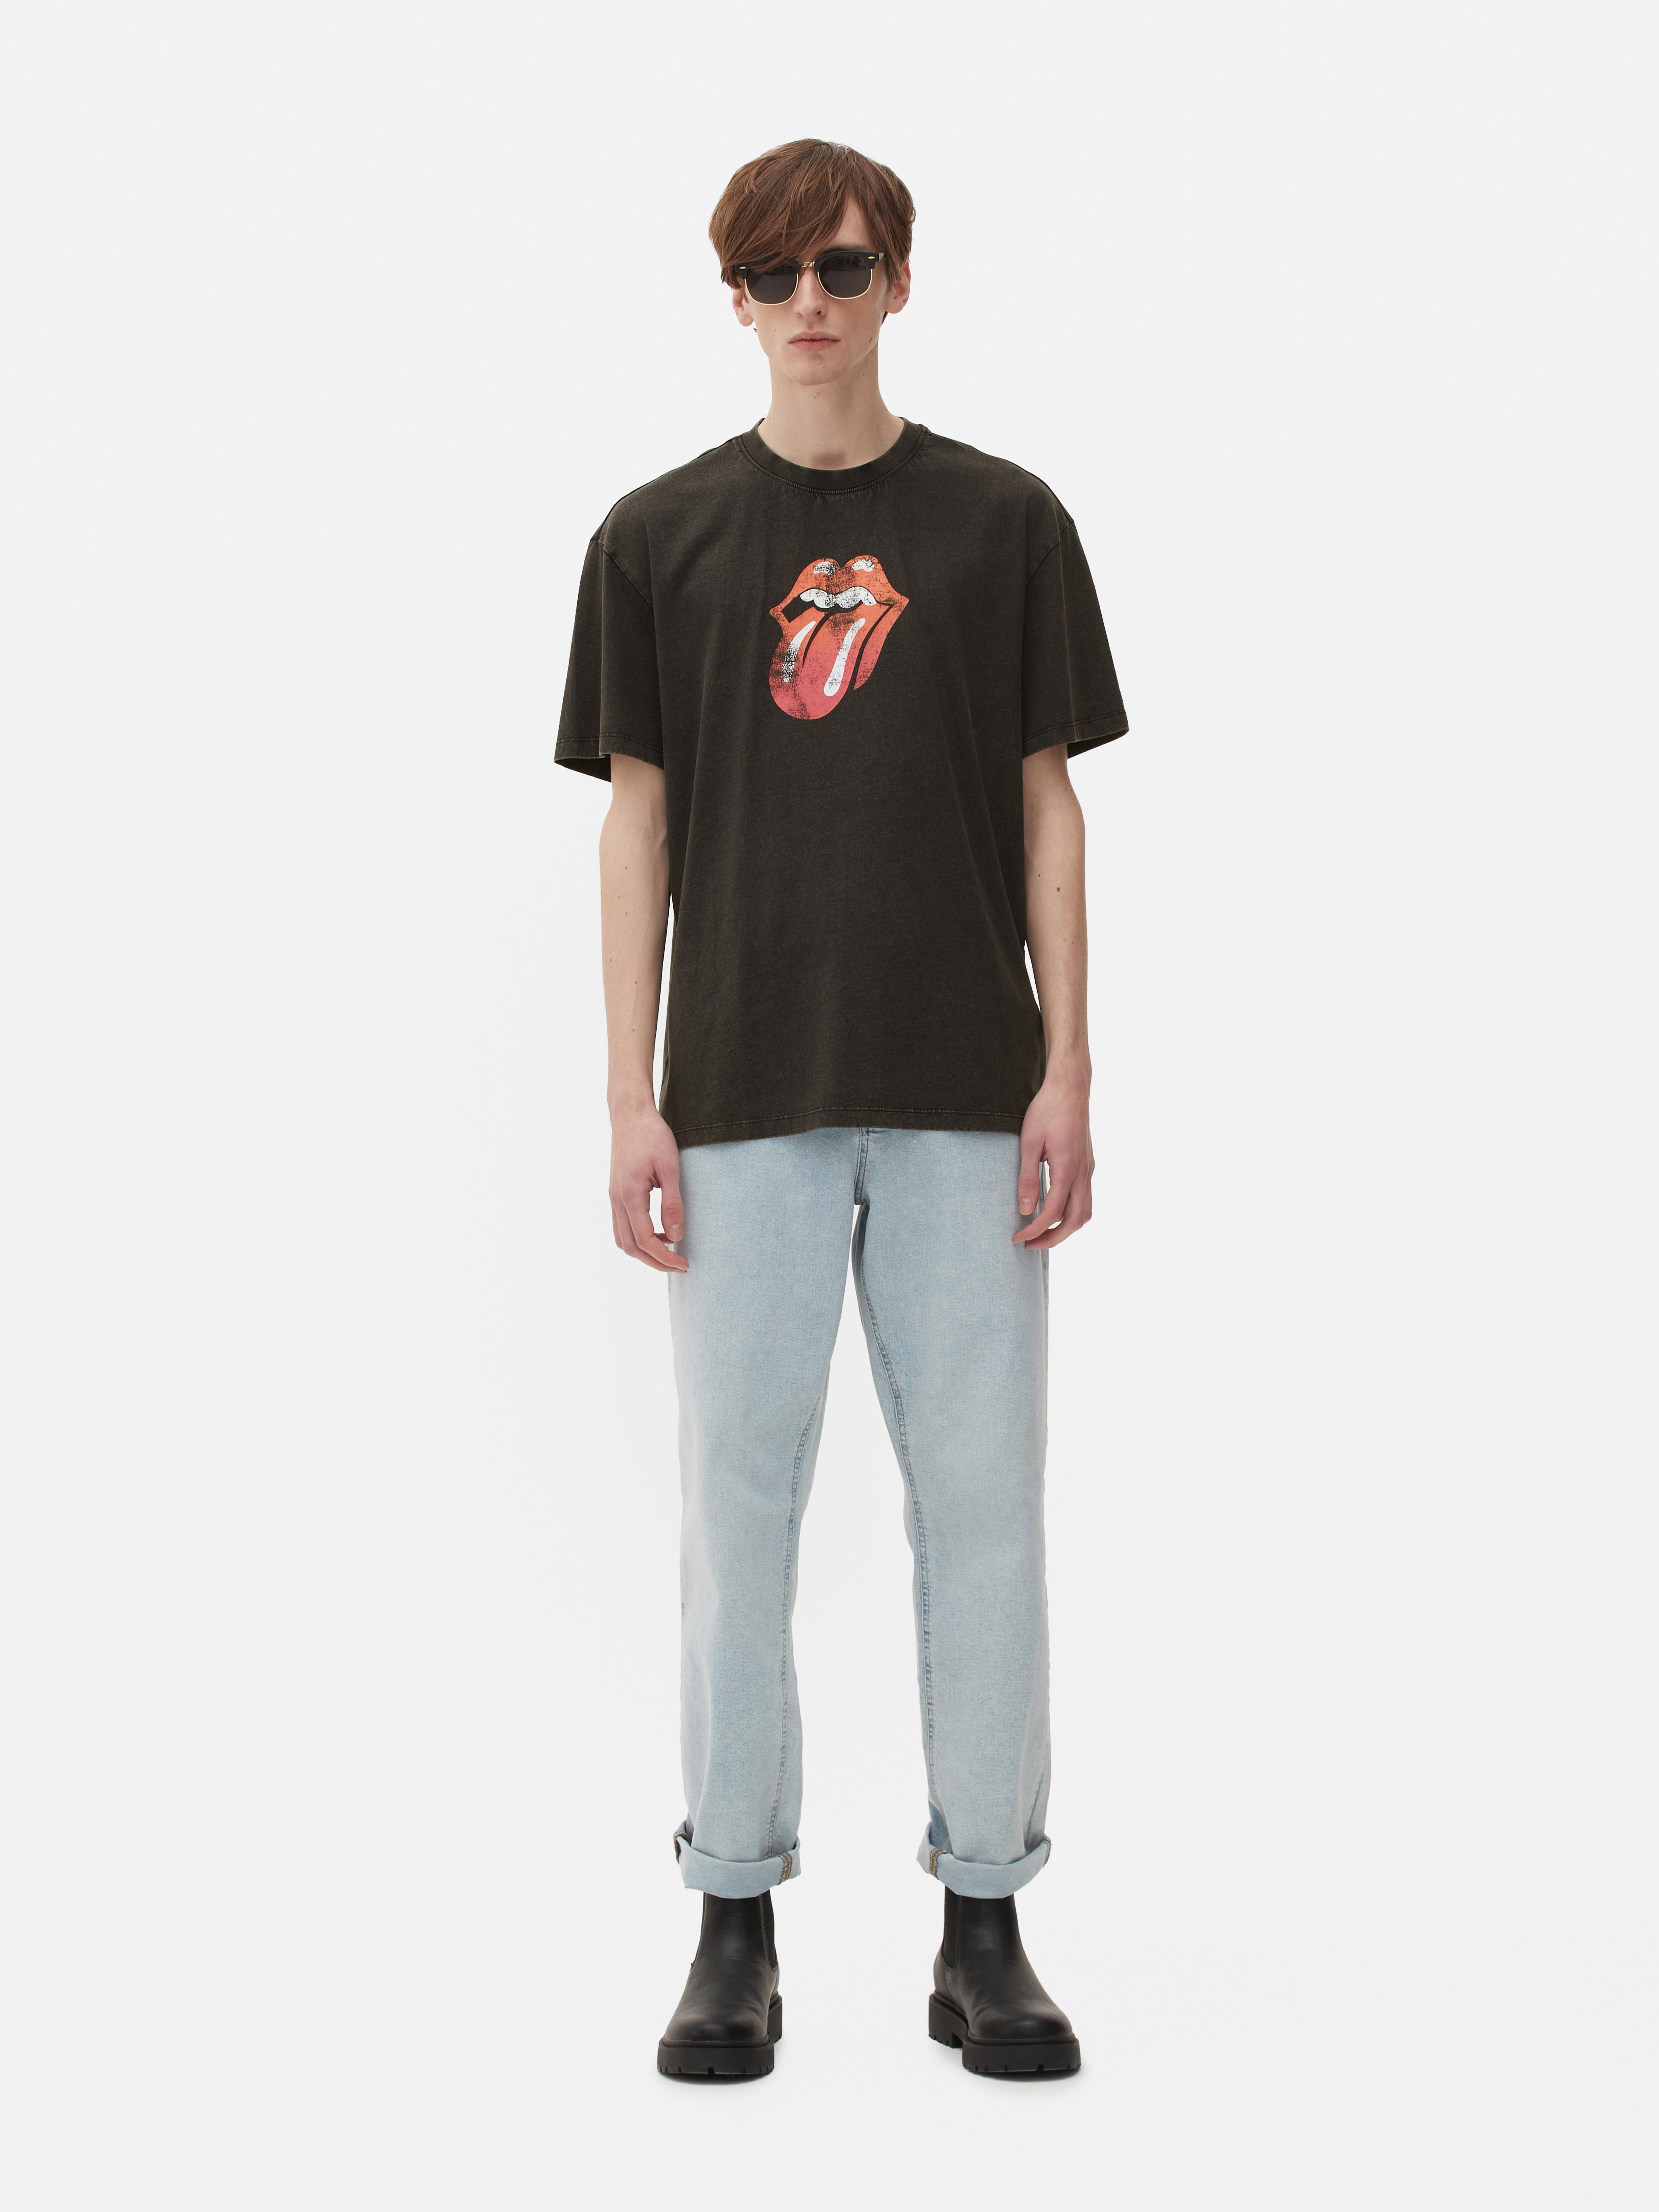 Camiseta de estilo vintage de The Rolling Stones